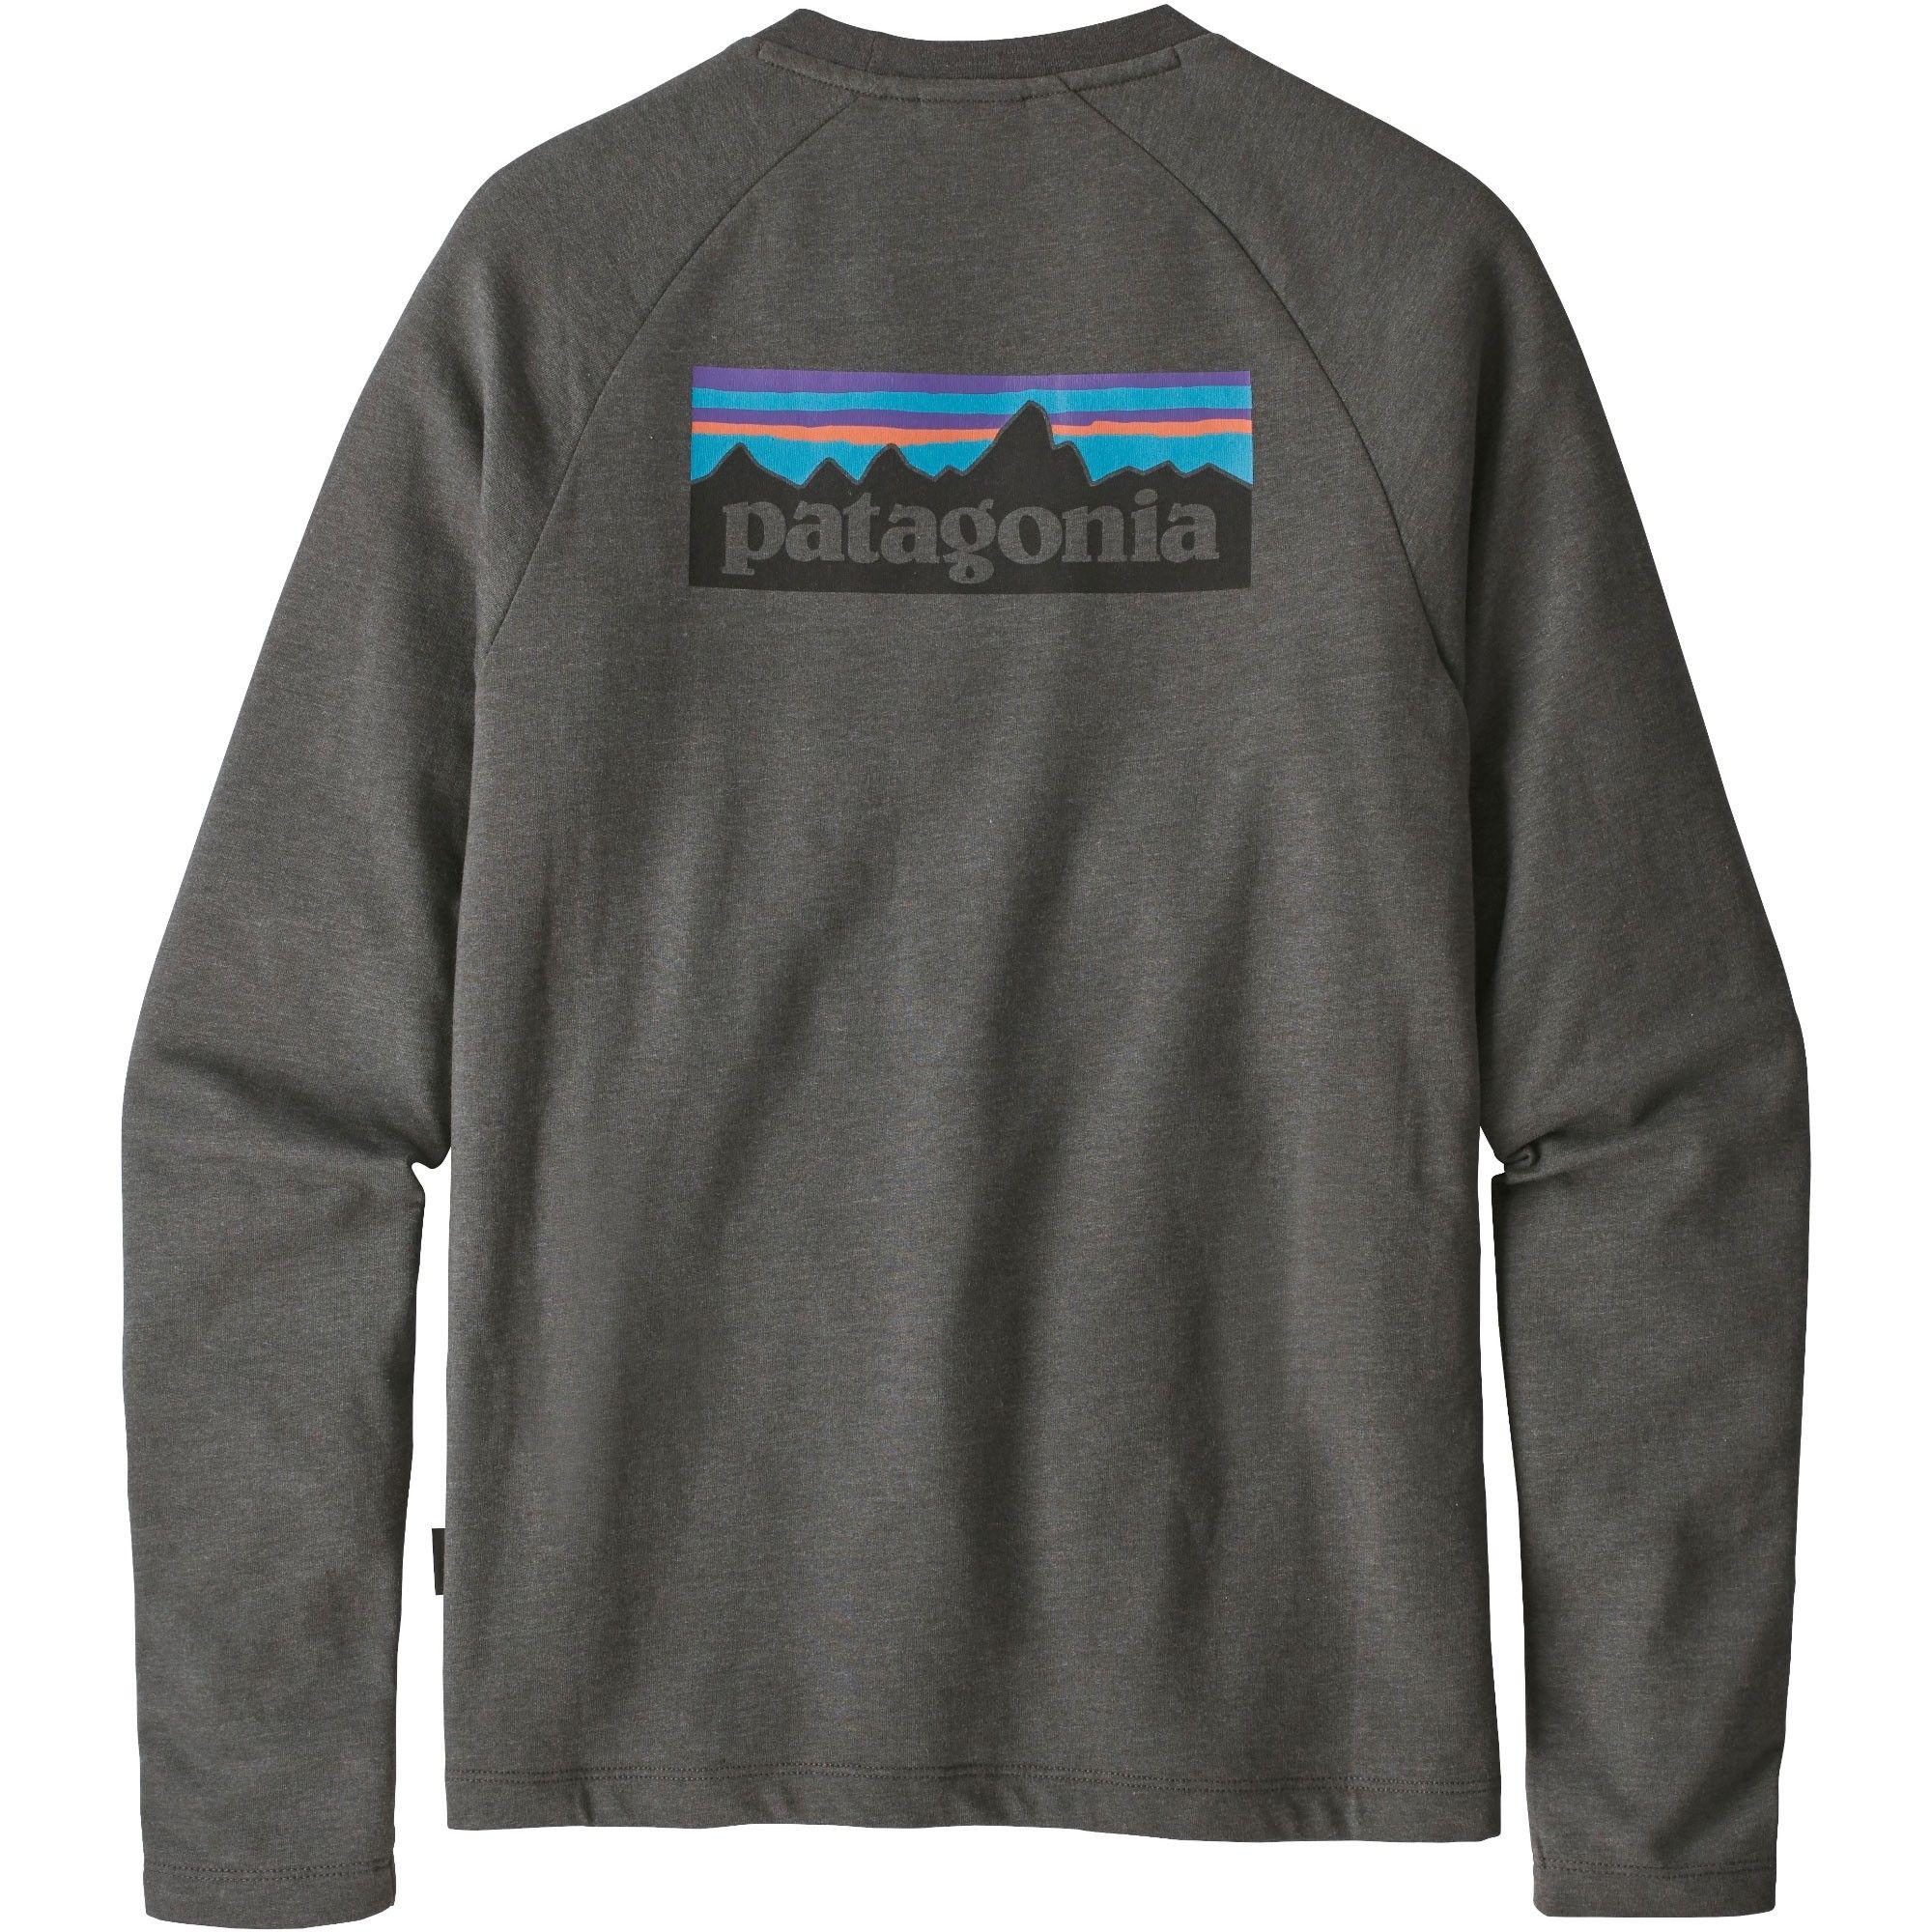 Grey Patagonia Logo - Patagonia P 6 Logo Lightweight Crew Sweatshirt. Outside.co.uk